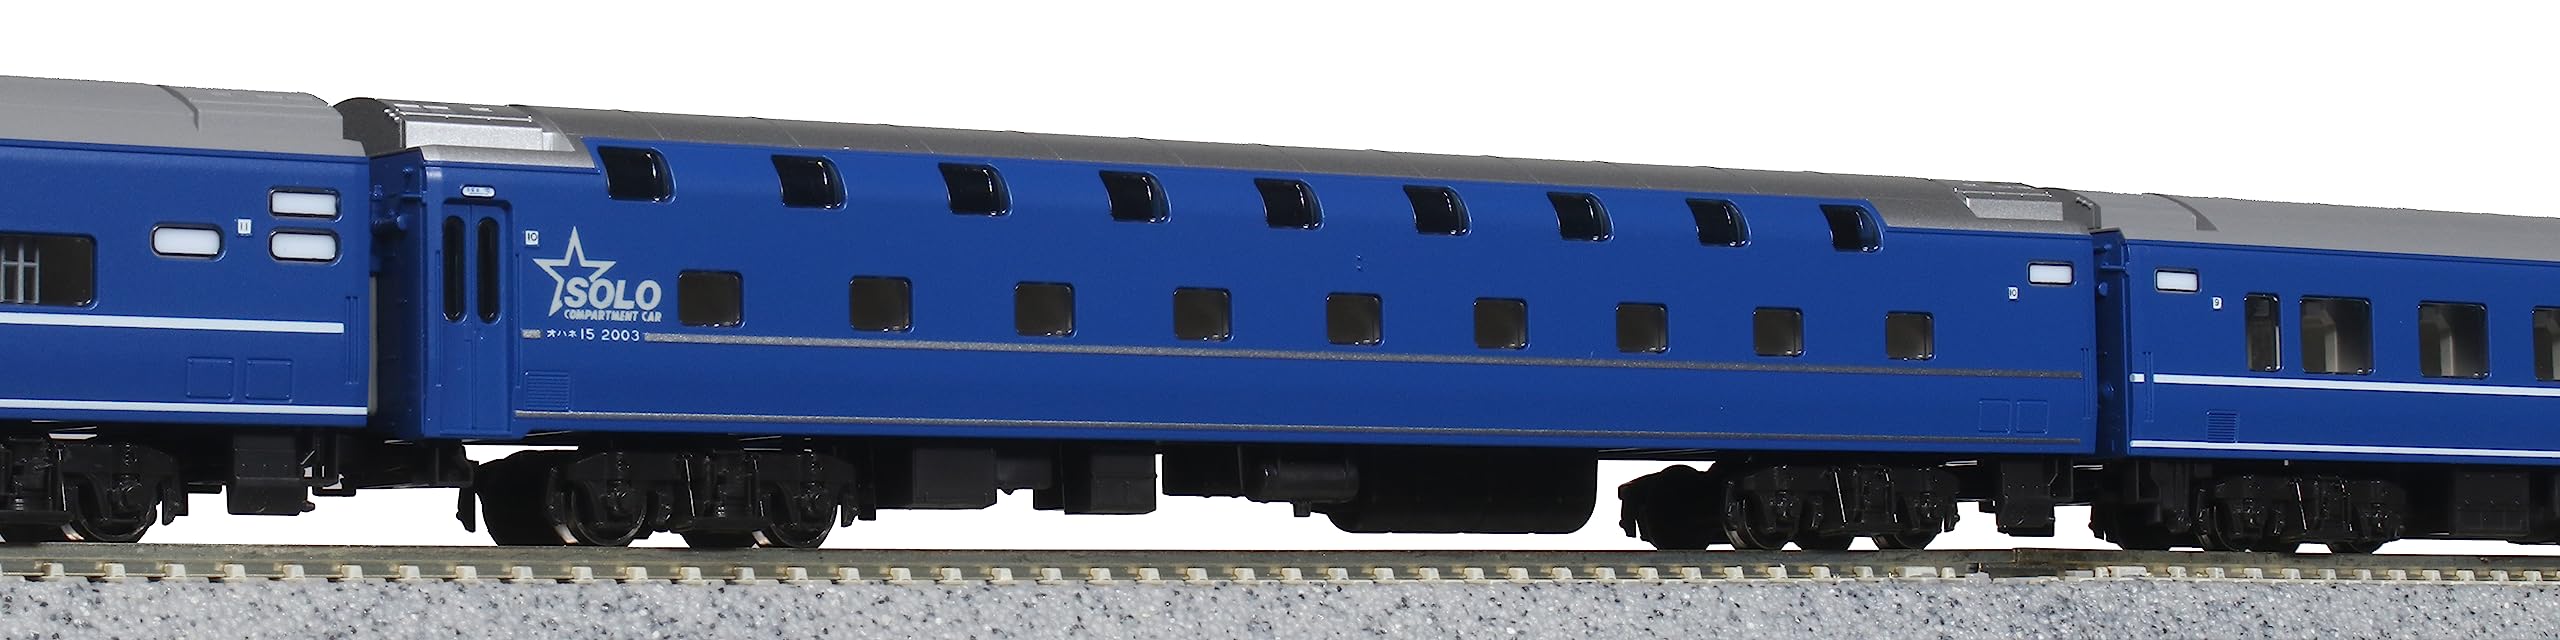 Kato N Gauge 14-Series 6-Car Set Sakura Hayabusa Fuji Passenger Railway Model